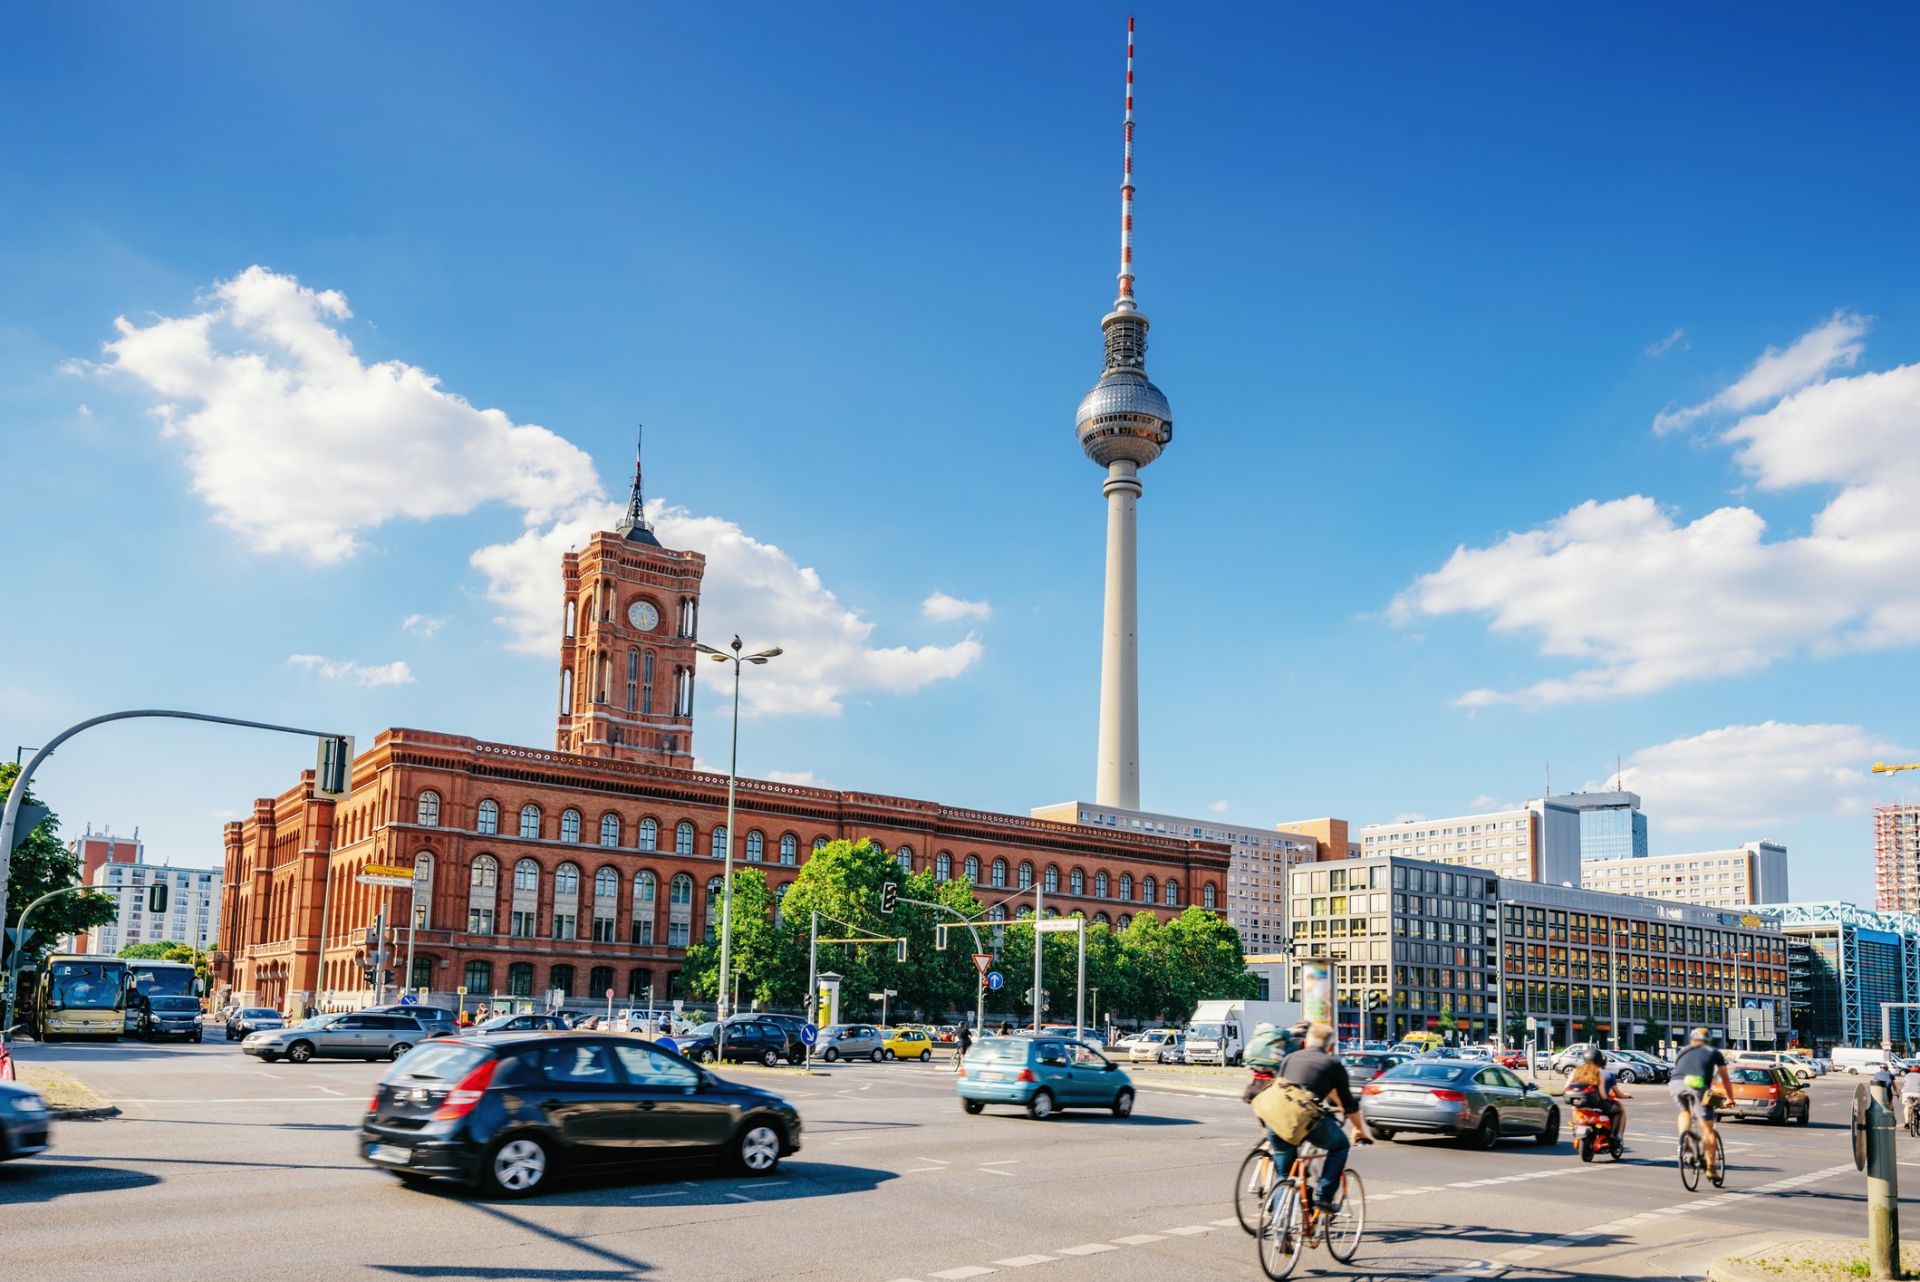 Малките немски фирми изтласкани към перифериите на градовете заради високите наеми